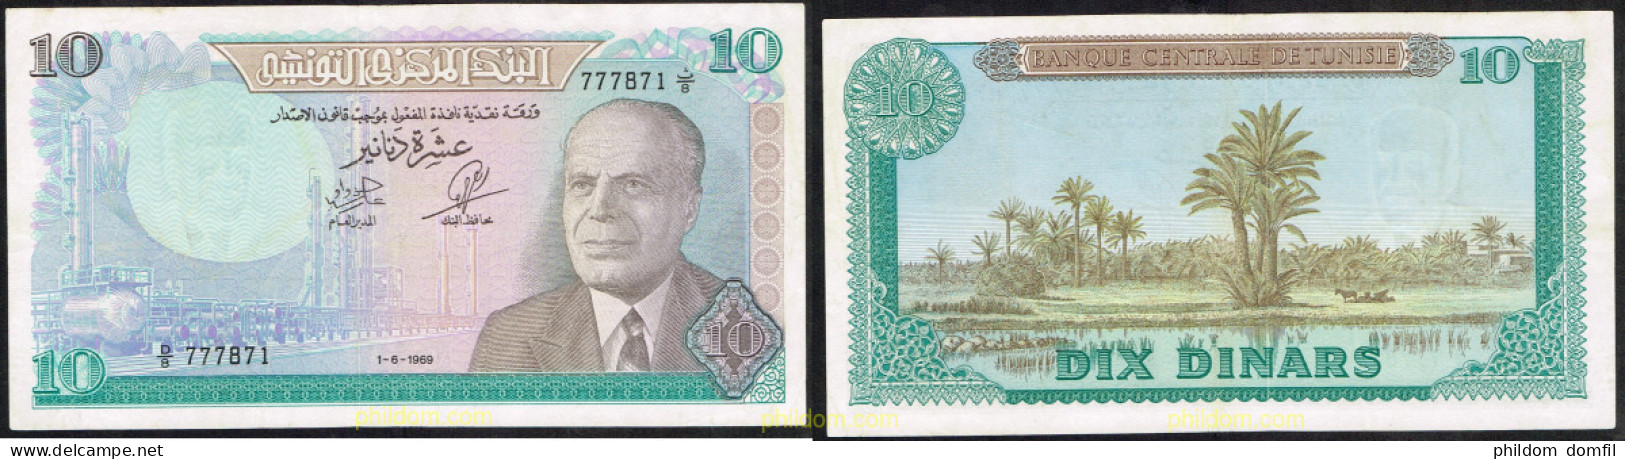 5034 TUNEZ 1969 TUNISIE 10 DINARS 1969 - Tunesien